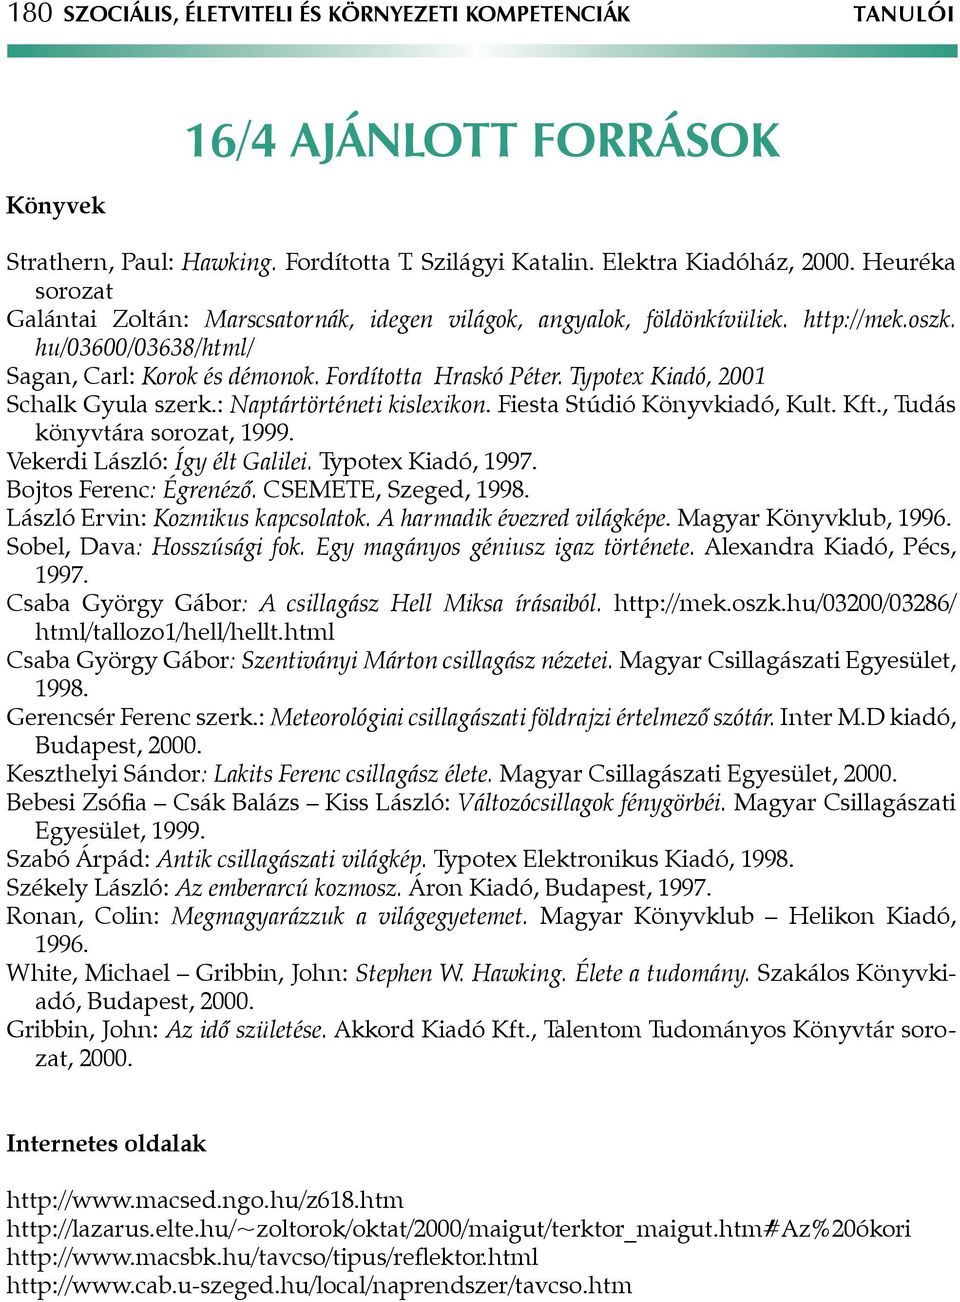 Typotex Kiadó, 2001 Schalk Gyula szerk.: Naptártörténeti kislexikon. Fiesta Stúdió Könyvkiadó, Kult. Kft., Tudás könyvtára sorozat, 1999. Vekerdi László: Így élt Galilei. Typotex Kiadó, 1997.